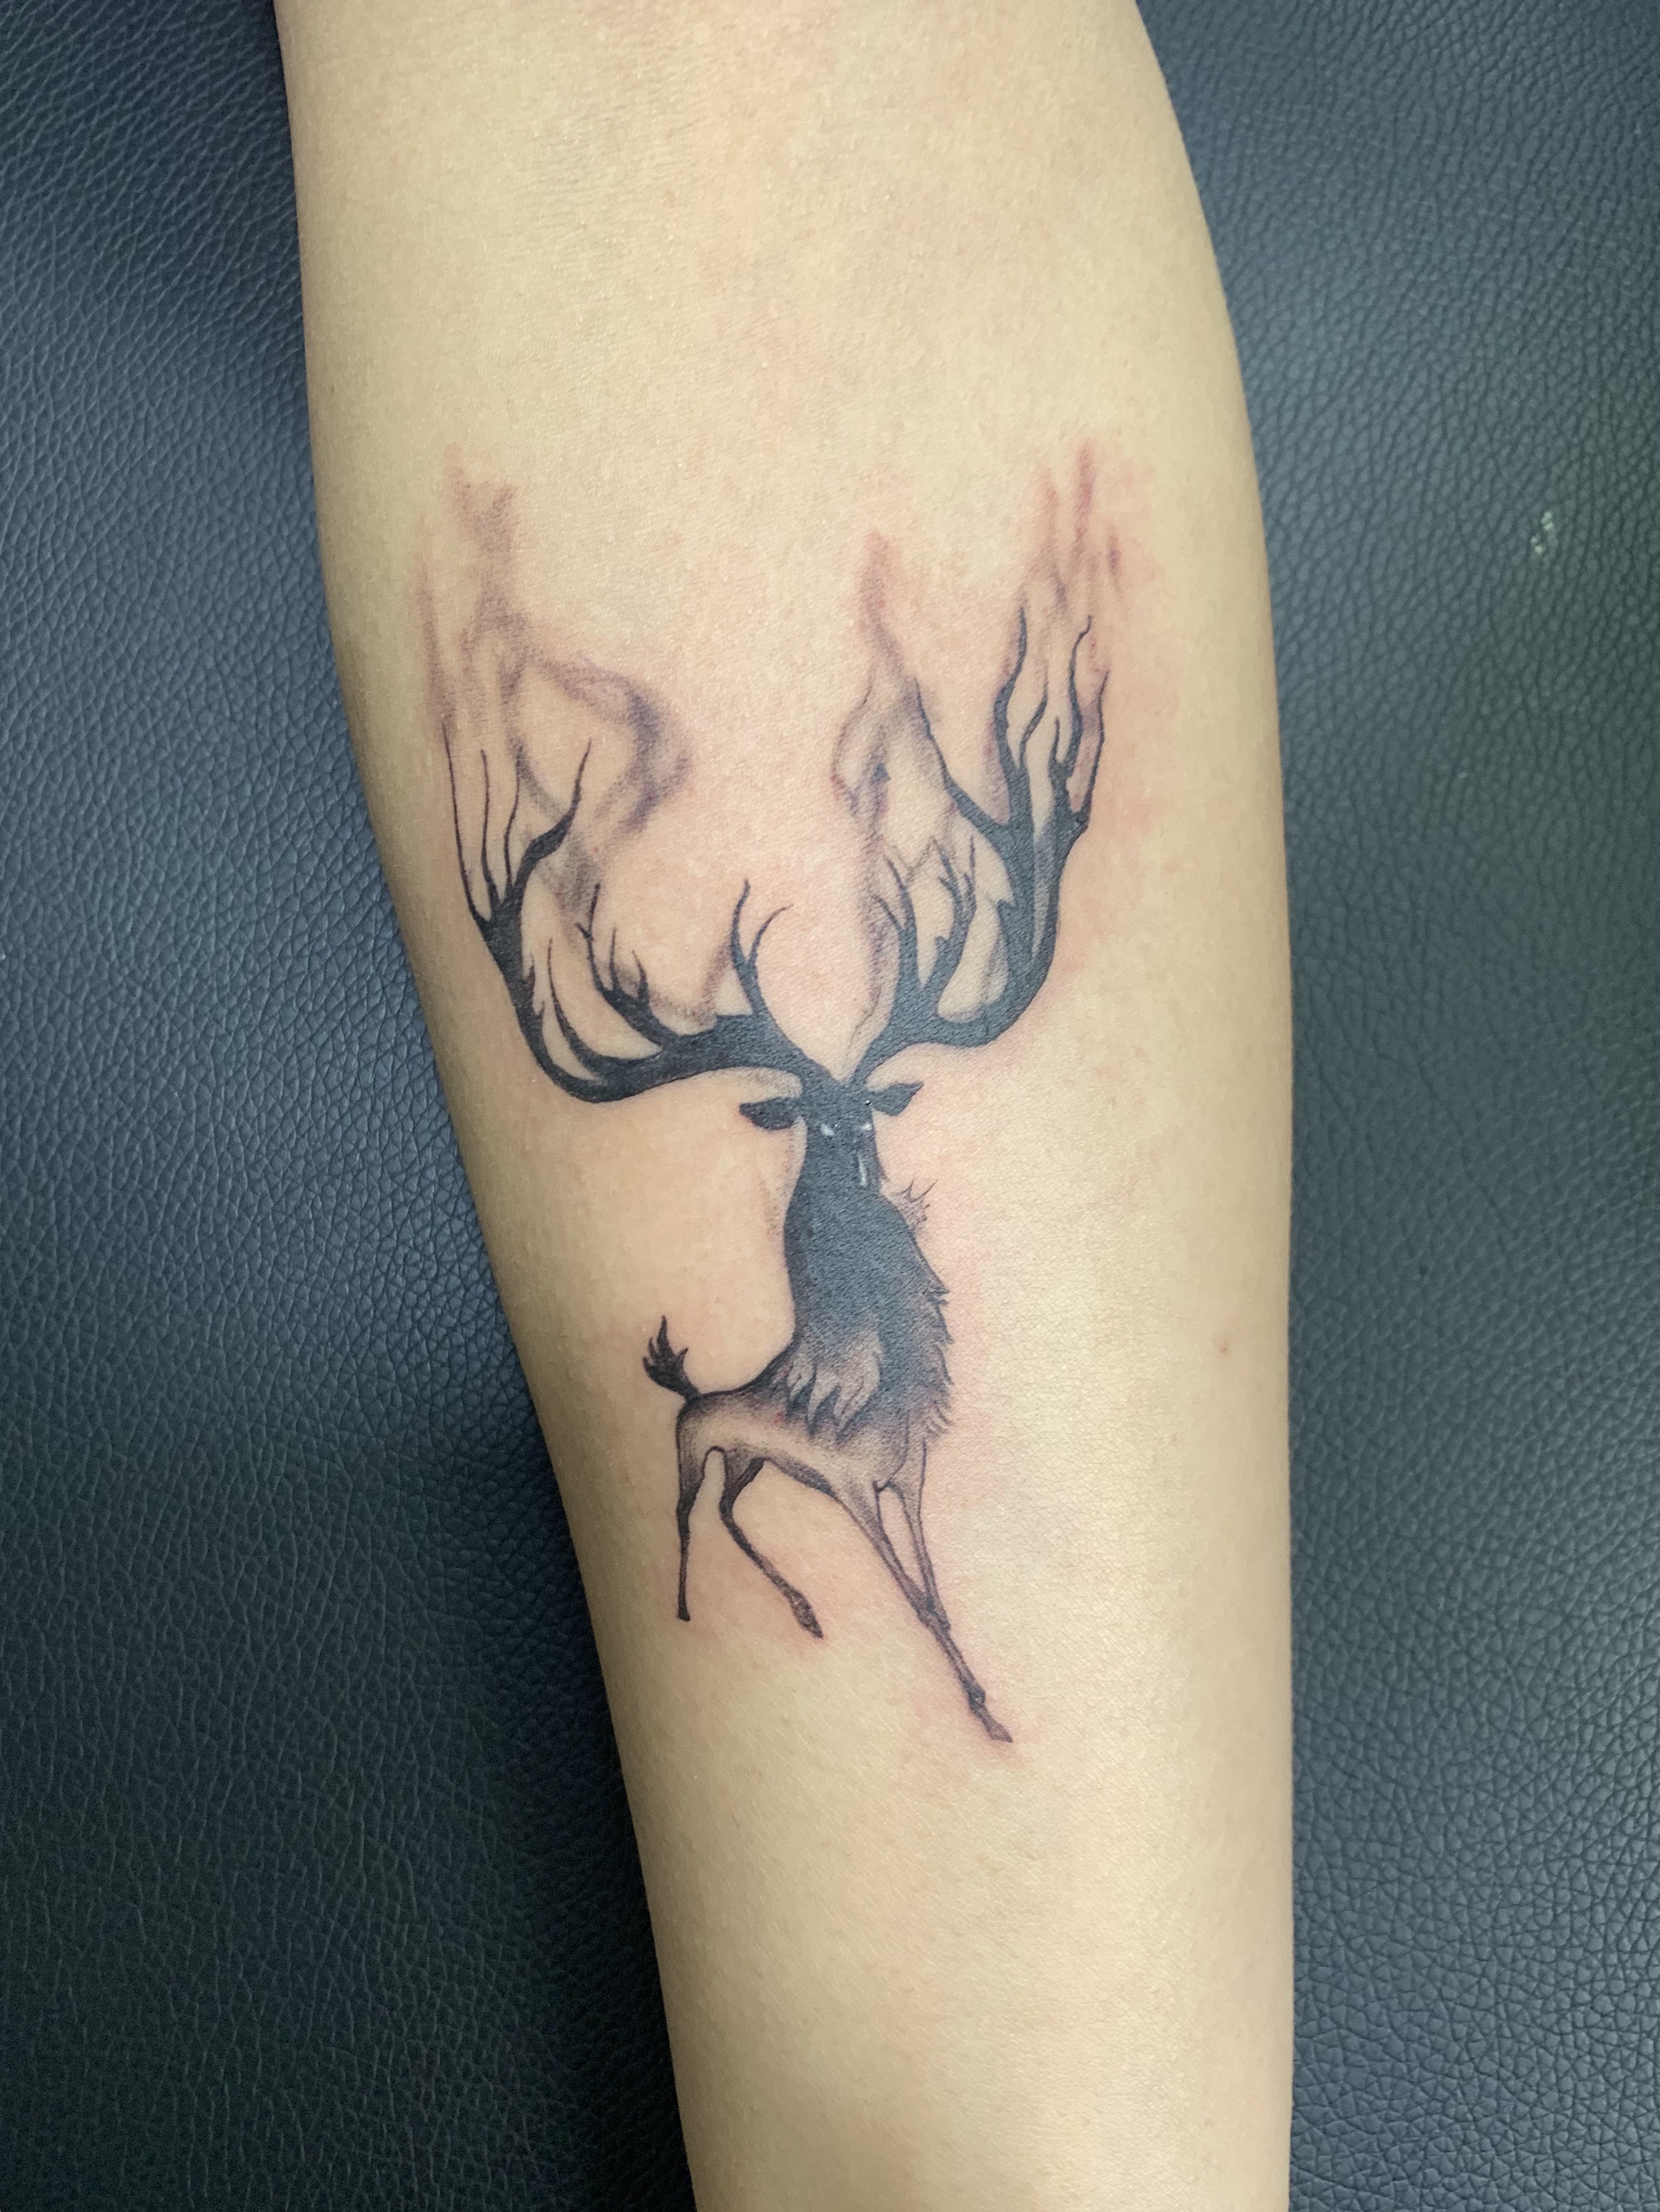 动物纹身图案#鹿头纹身#吴江松陵纹身#吴江酷客纹身